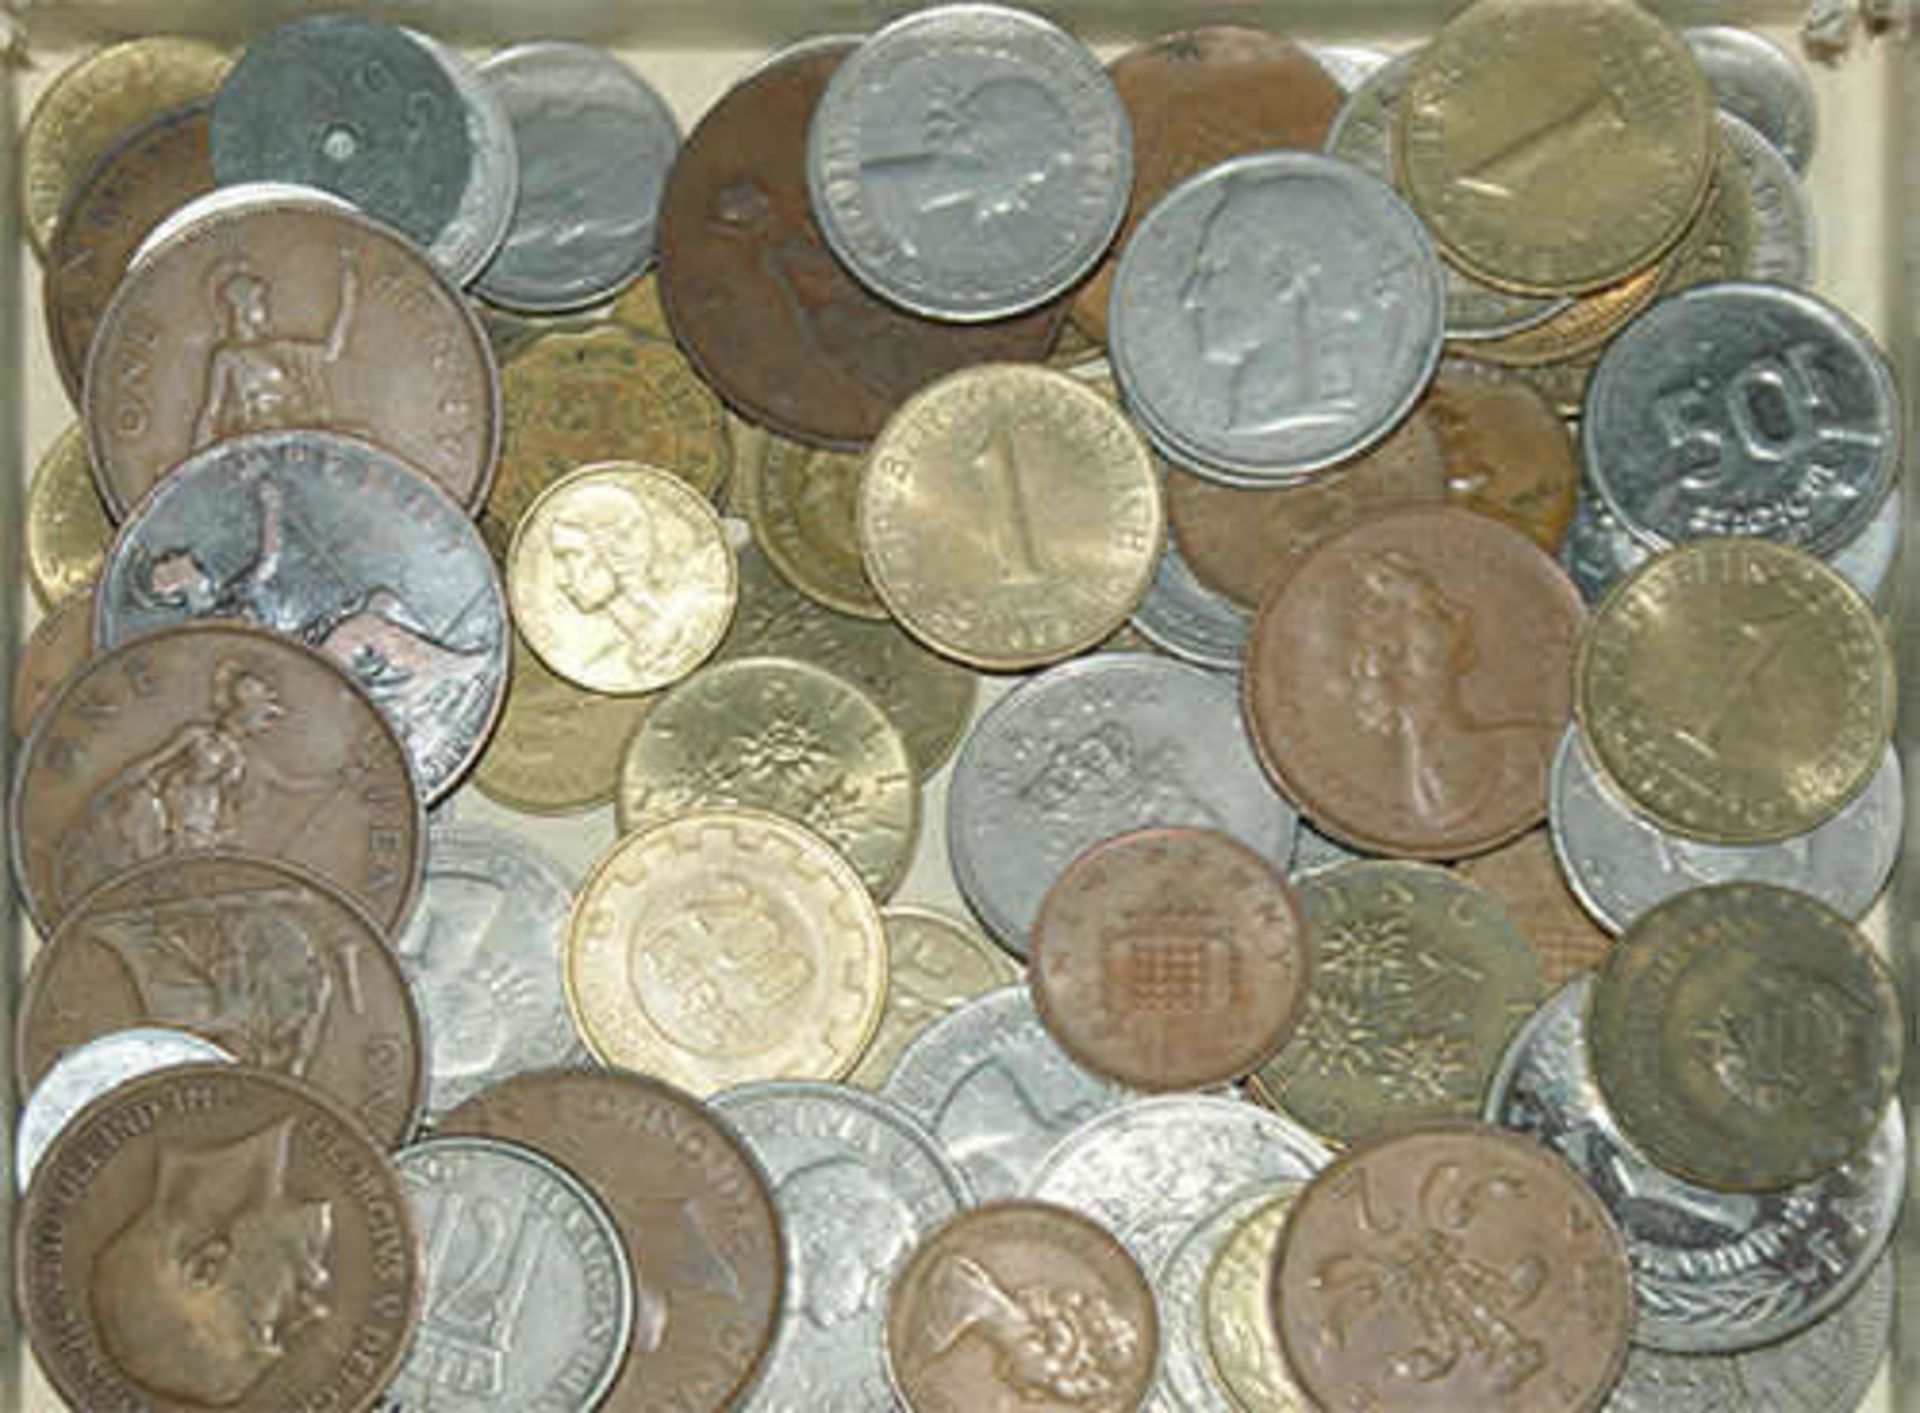 kleines Lot Umlaufmünzen, dabei auch ältere Stücke